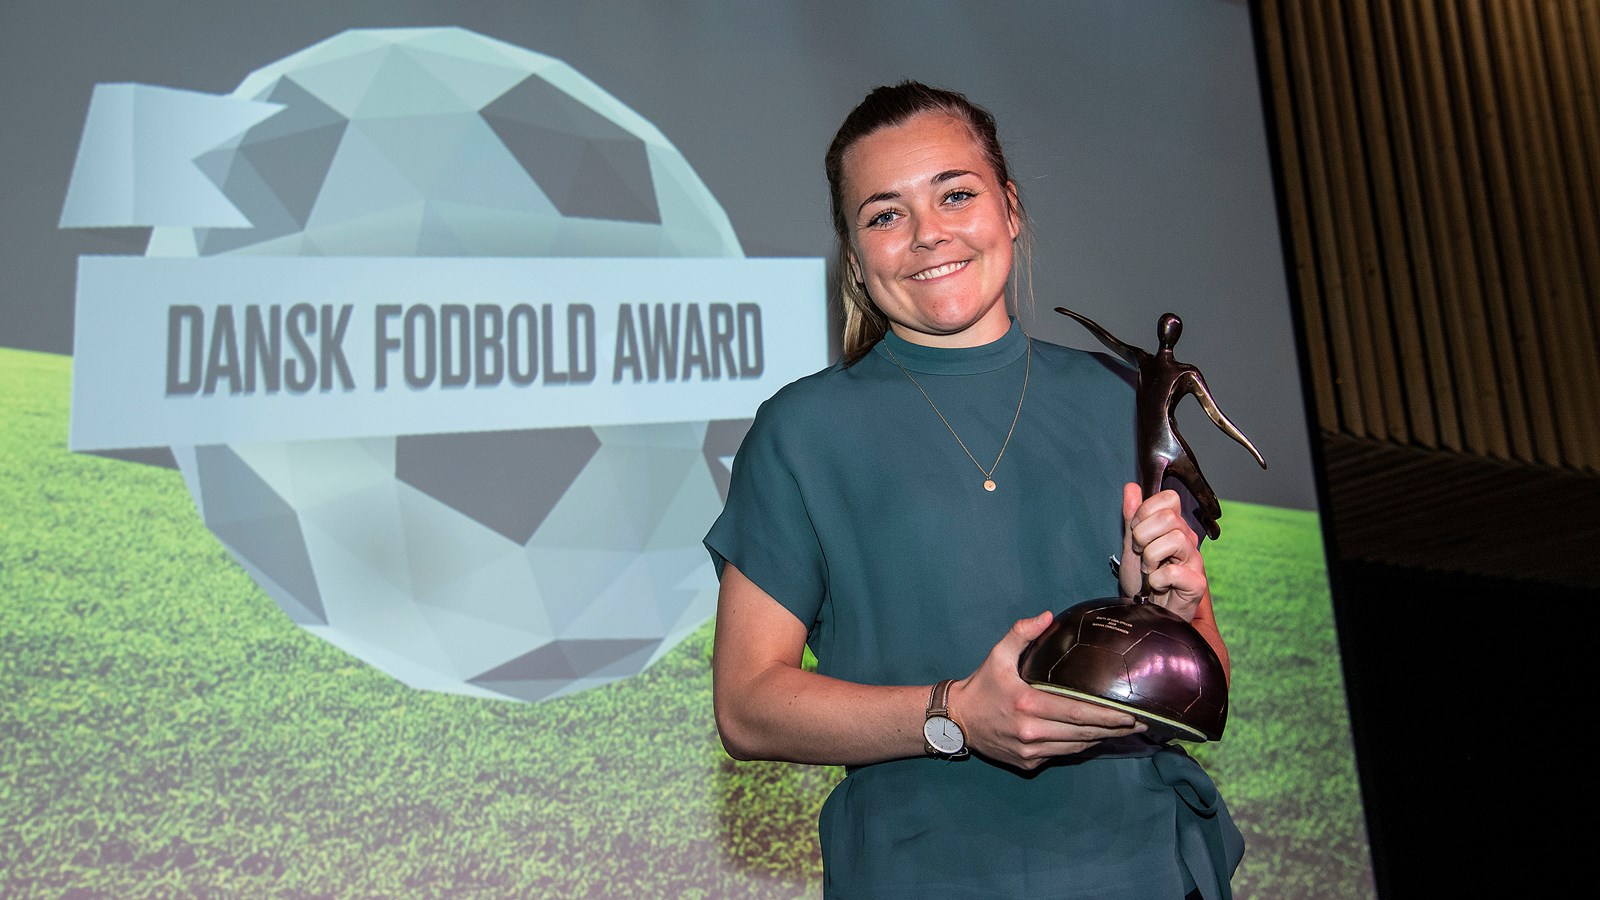 Årets prismodtagere ved Dansk Fodbold Award er fundet